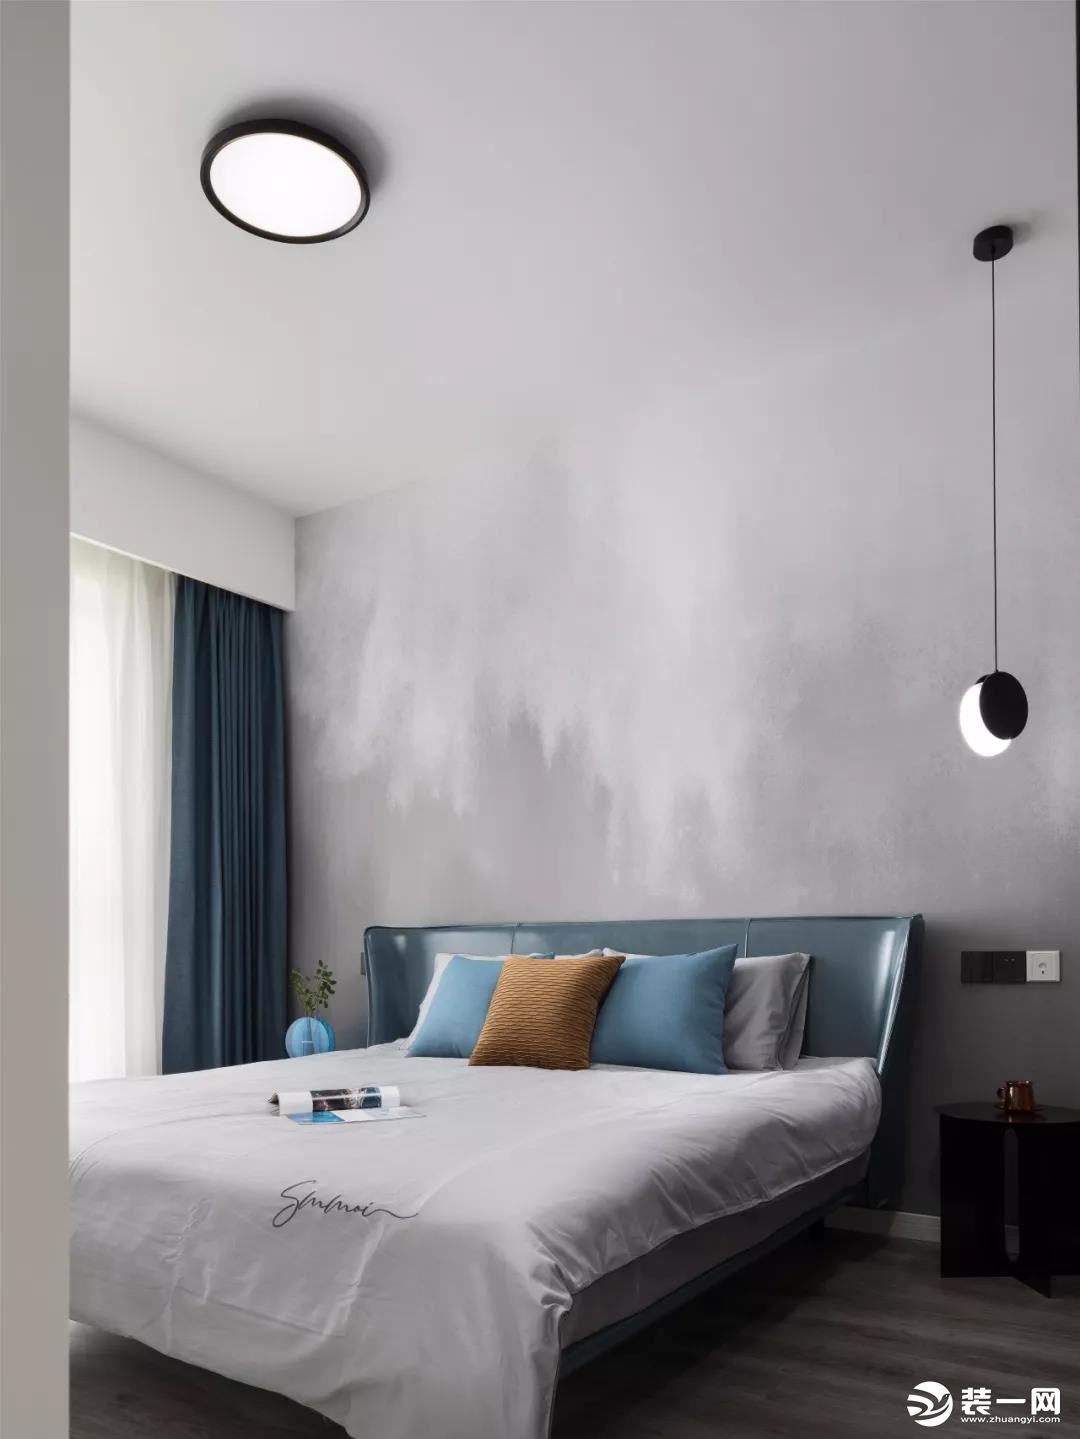 主卧室的床头背景墙铺贴了朦胧感十足的壁纸，结合这个款式独特的床、吊灯和主灯，给人一种时尚大方的感觉。